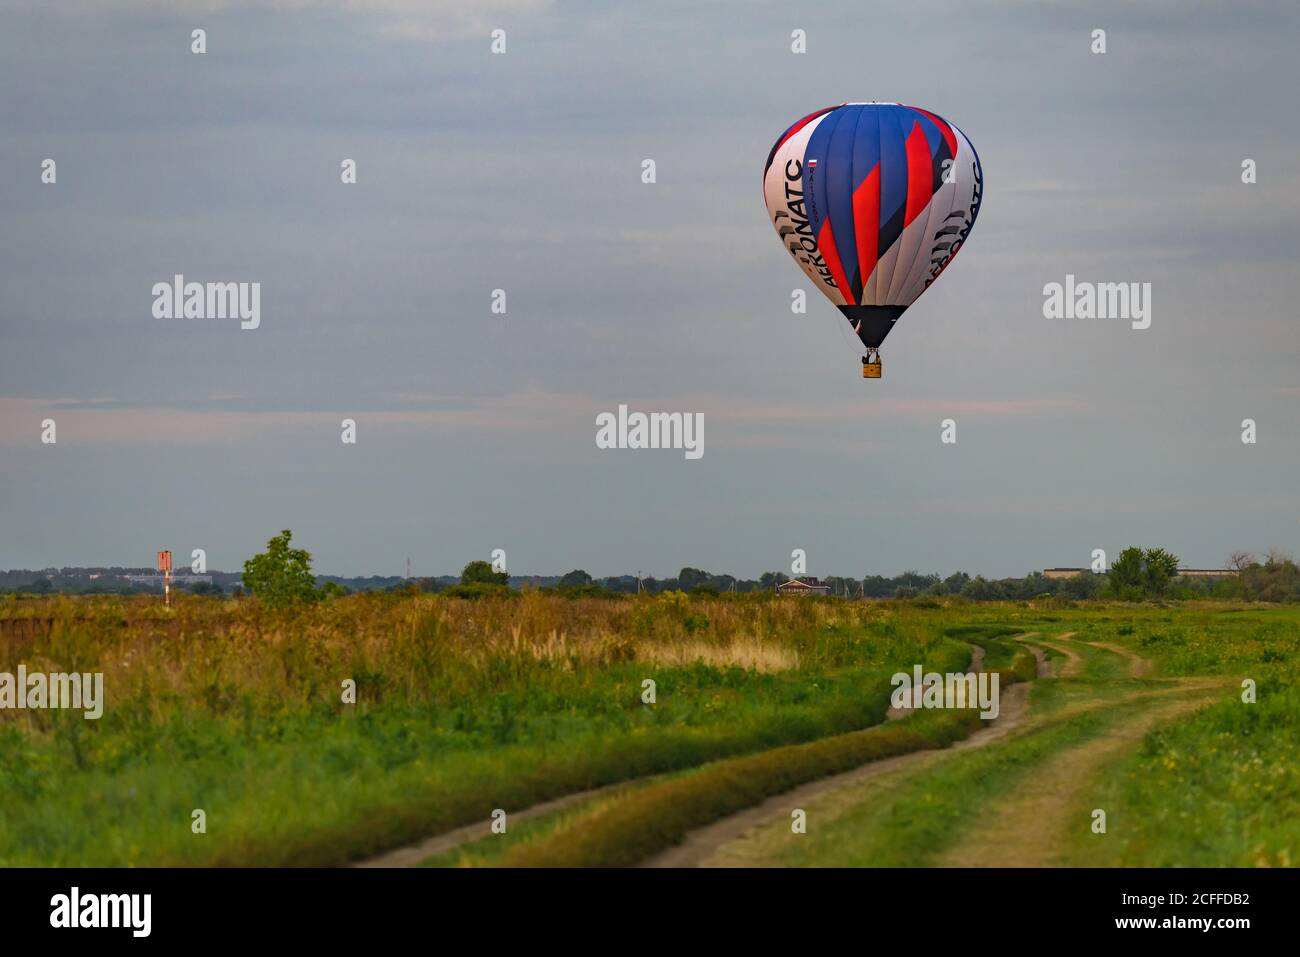 RYAZAN, RUSSIE - 16 AOÛT 2020 : ballon d'air chaud survolant un champ et une route de campagne au crépuscule Banque D'Images